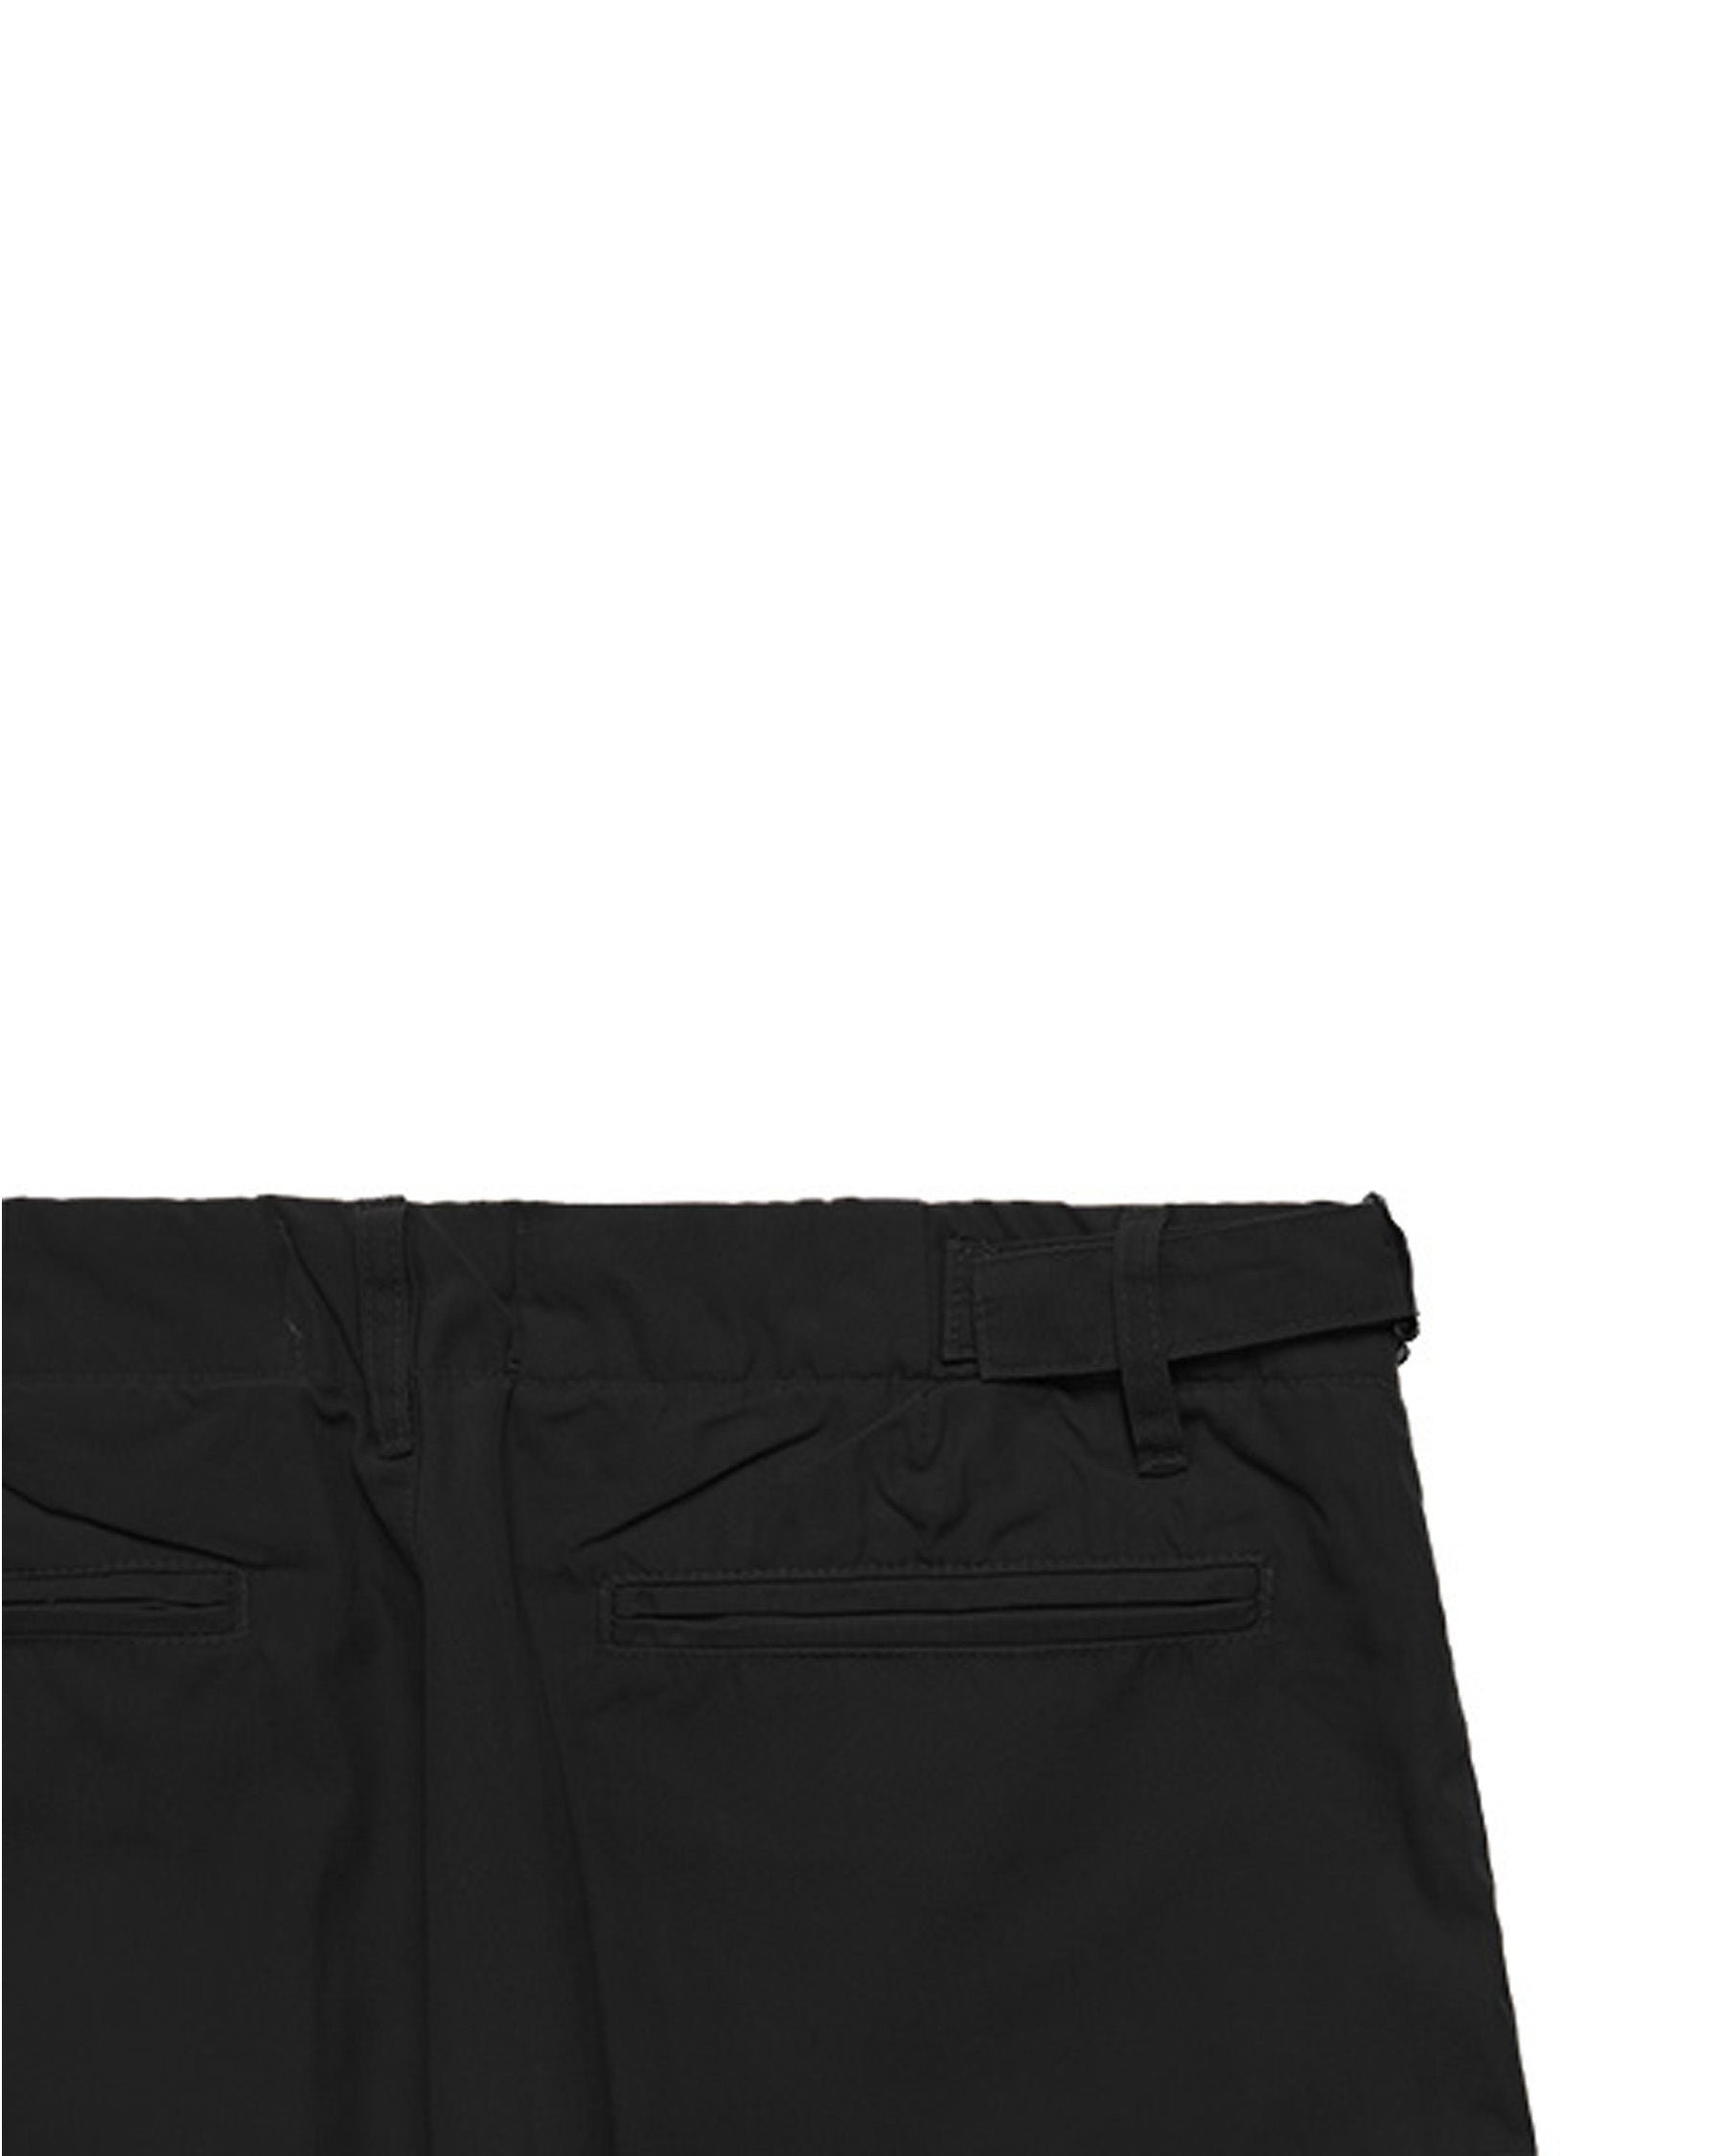 310 Trouser - Black